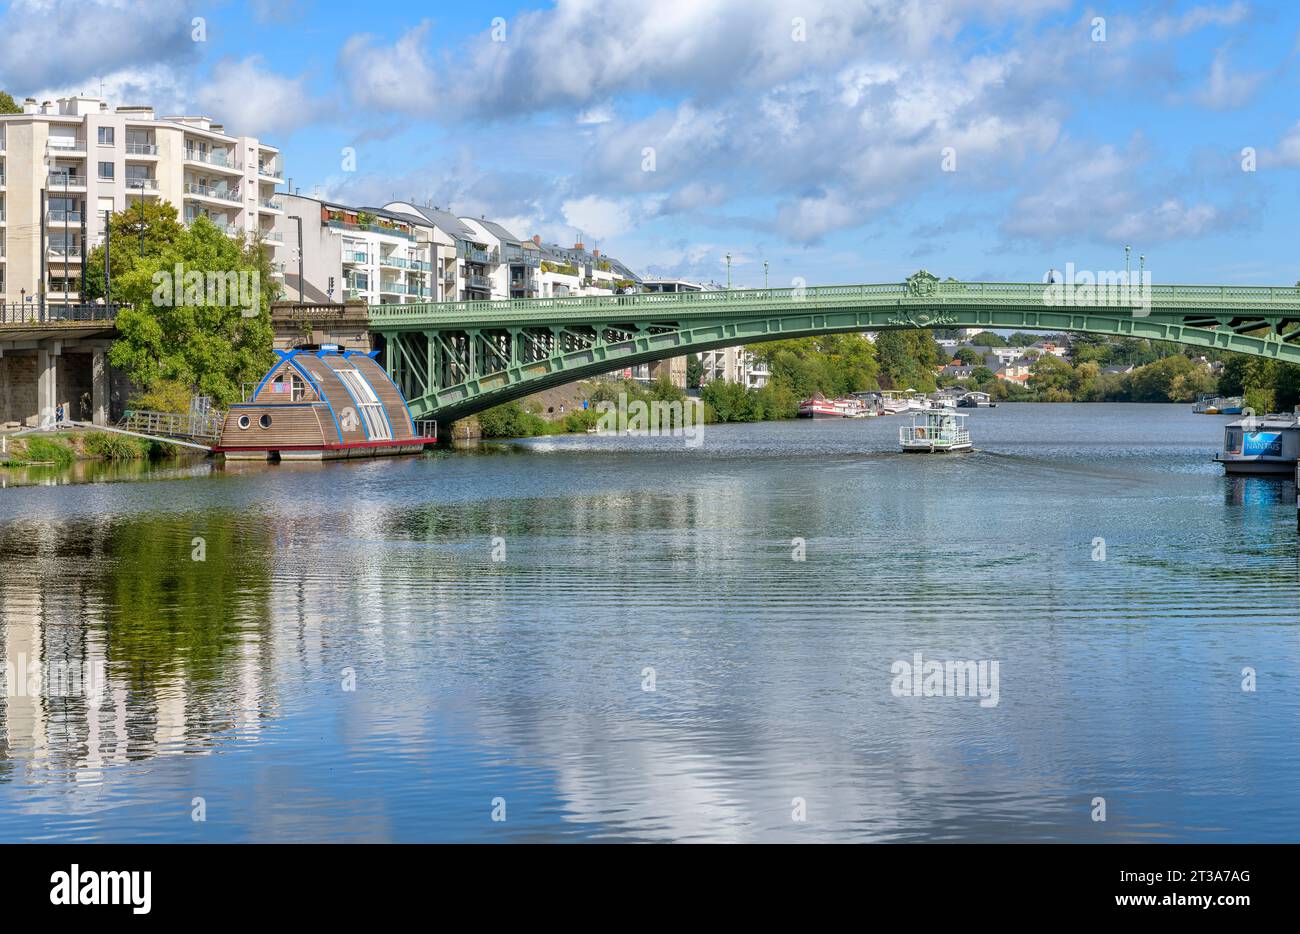 Insolita, barca chiamata Vaisseau Odyssee, ormeggiata sulle rive dell'Erdre. Il ponte si chiama Pont Général de la Motte Rouge. A Nantes, in Francia. Foto Stock